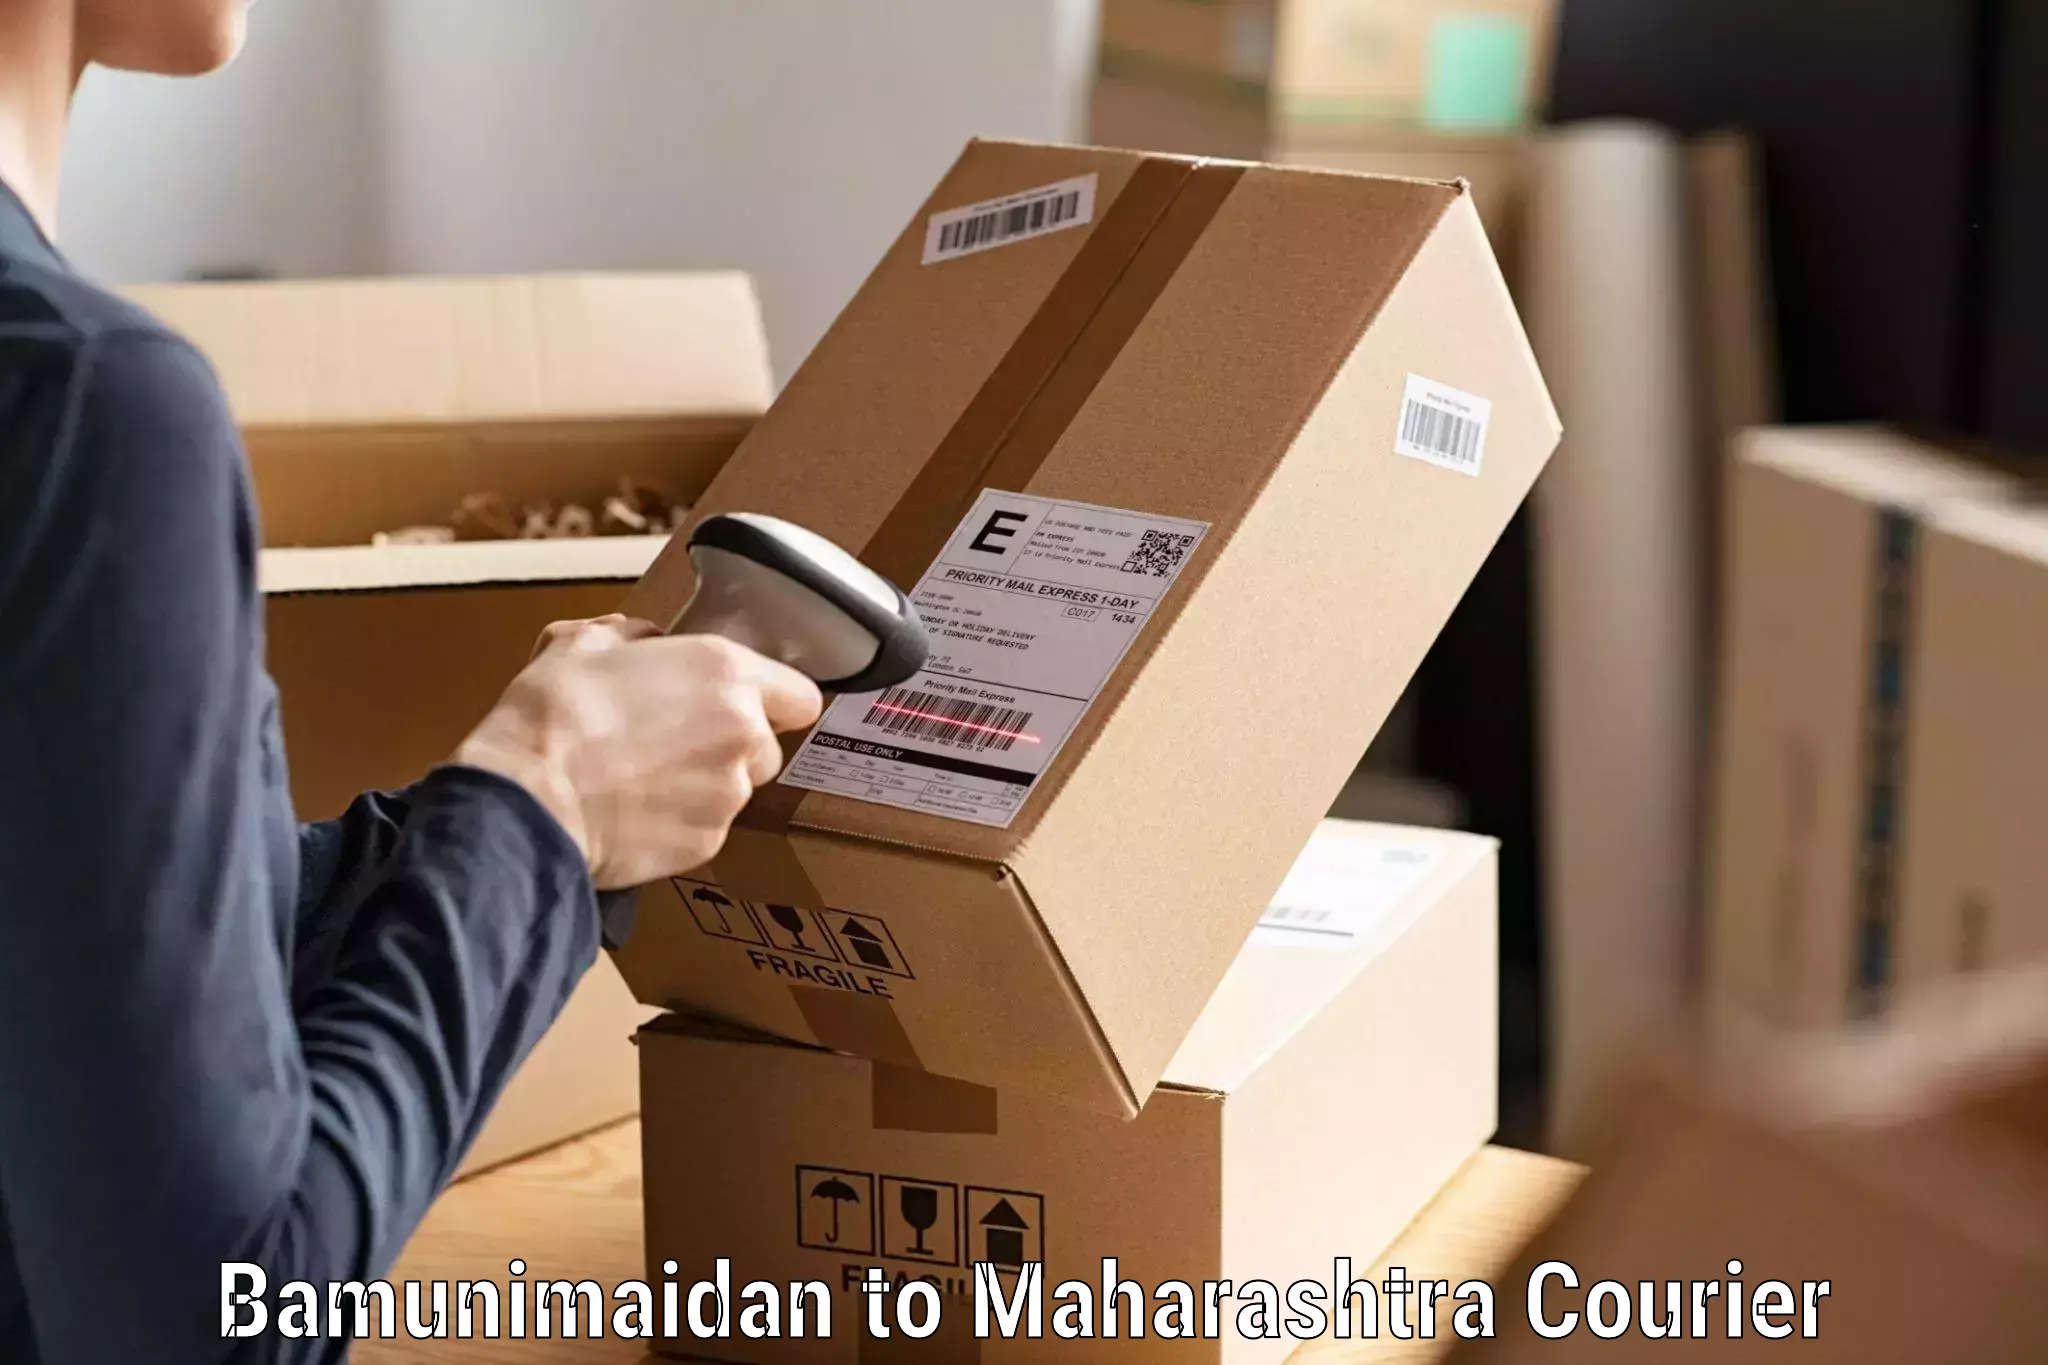 Multi-carrier shipping Bamunimaidan to Walchandnagar